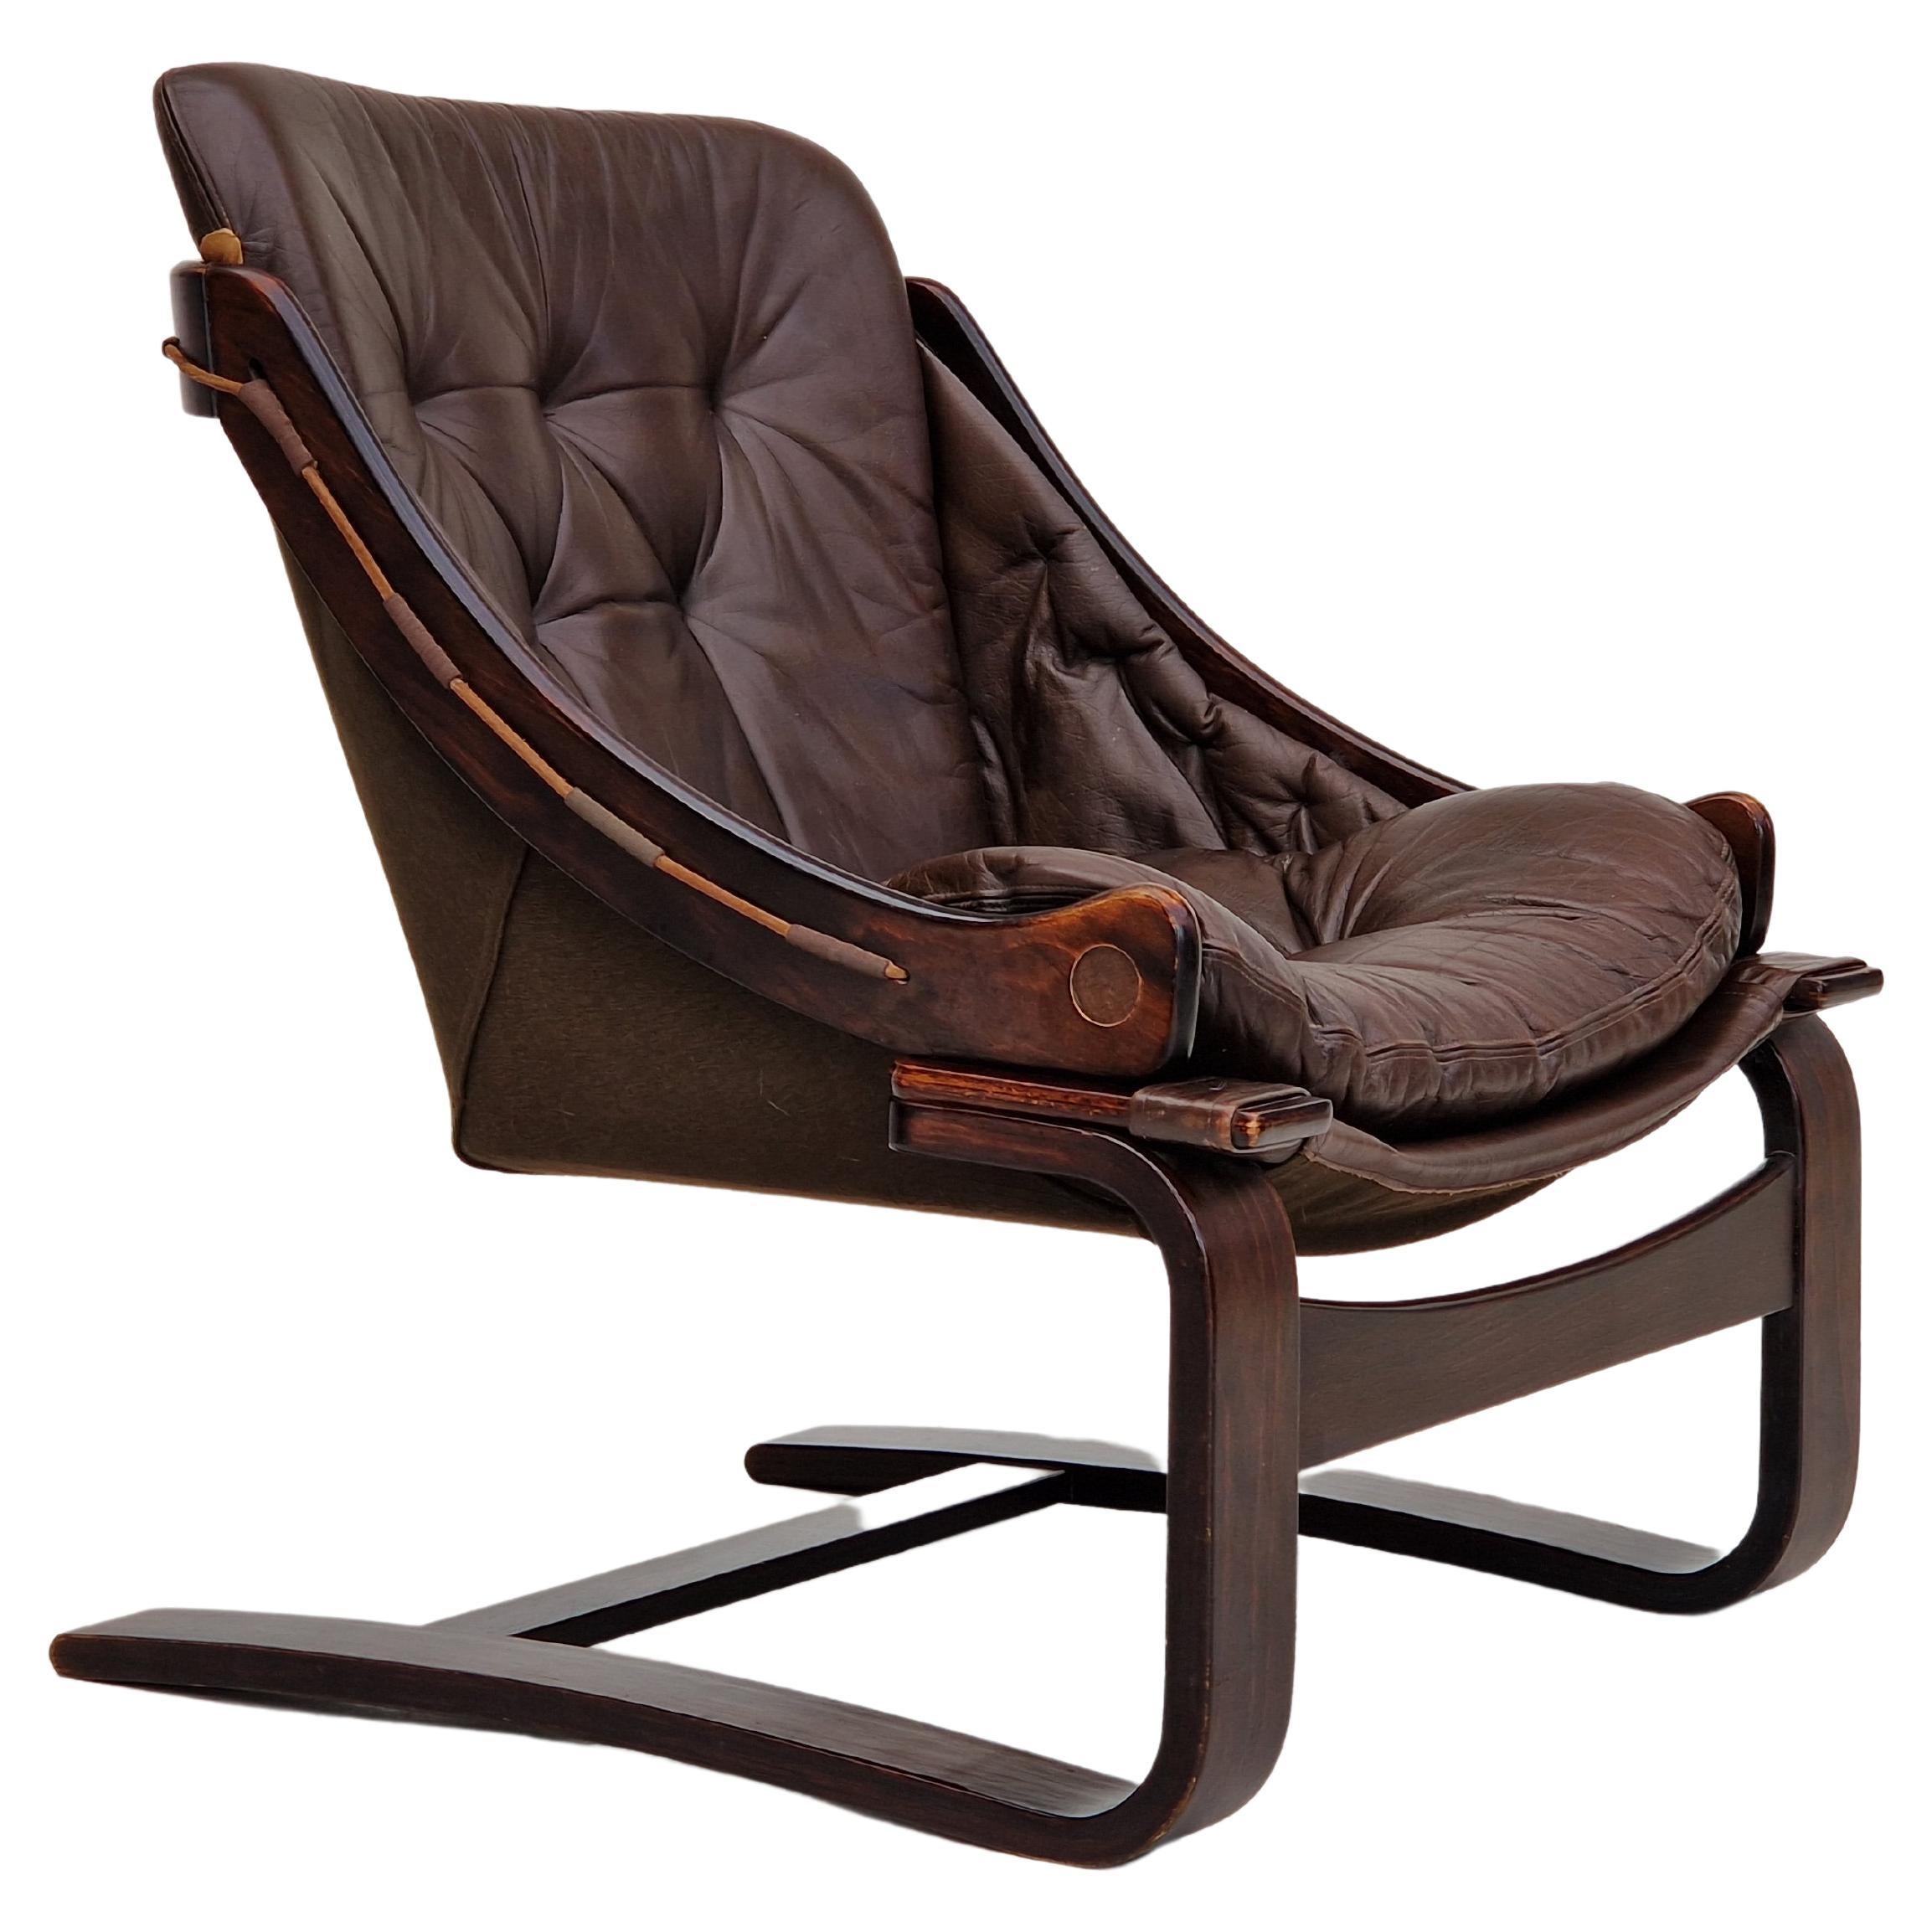 Chaise longue en cuir marron des années 1970, par Ake Fribytter pour Nelo Sweden.